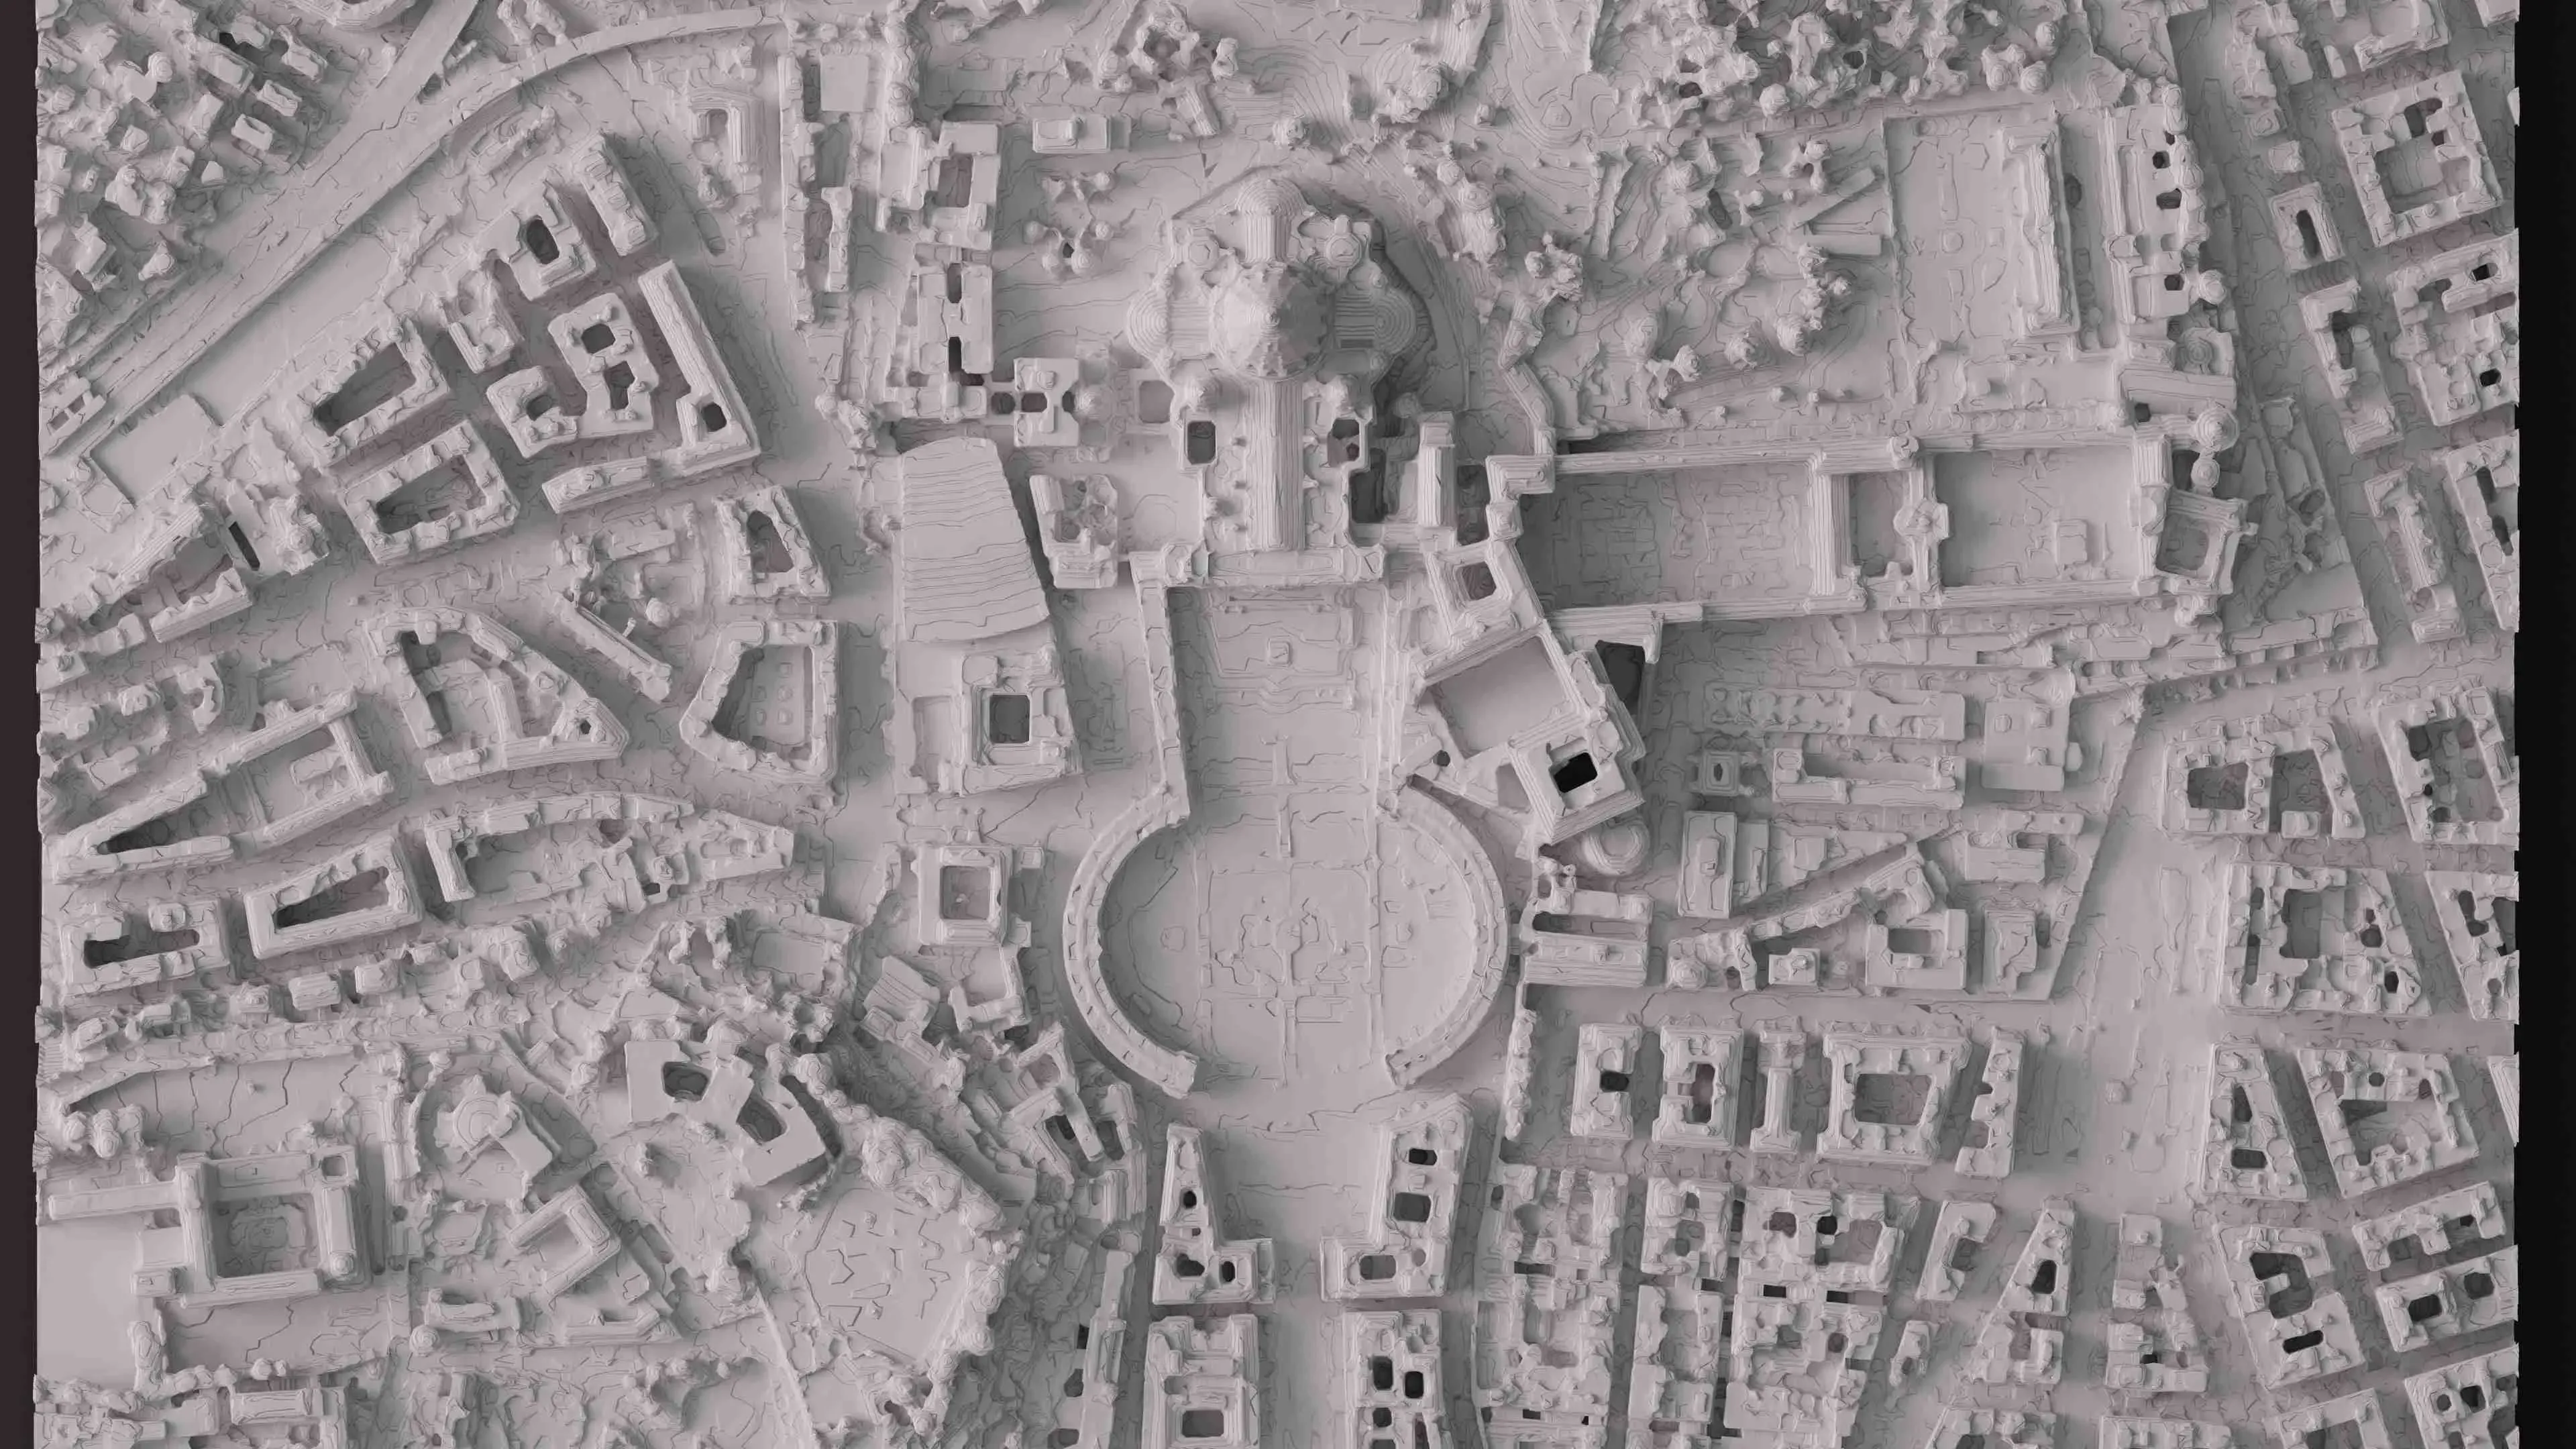 3D MODEL OF THE VATICAN, VATICAN CITY